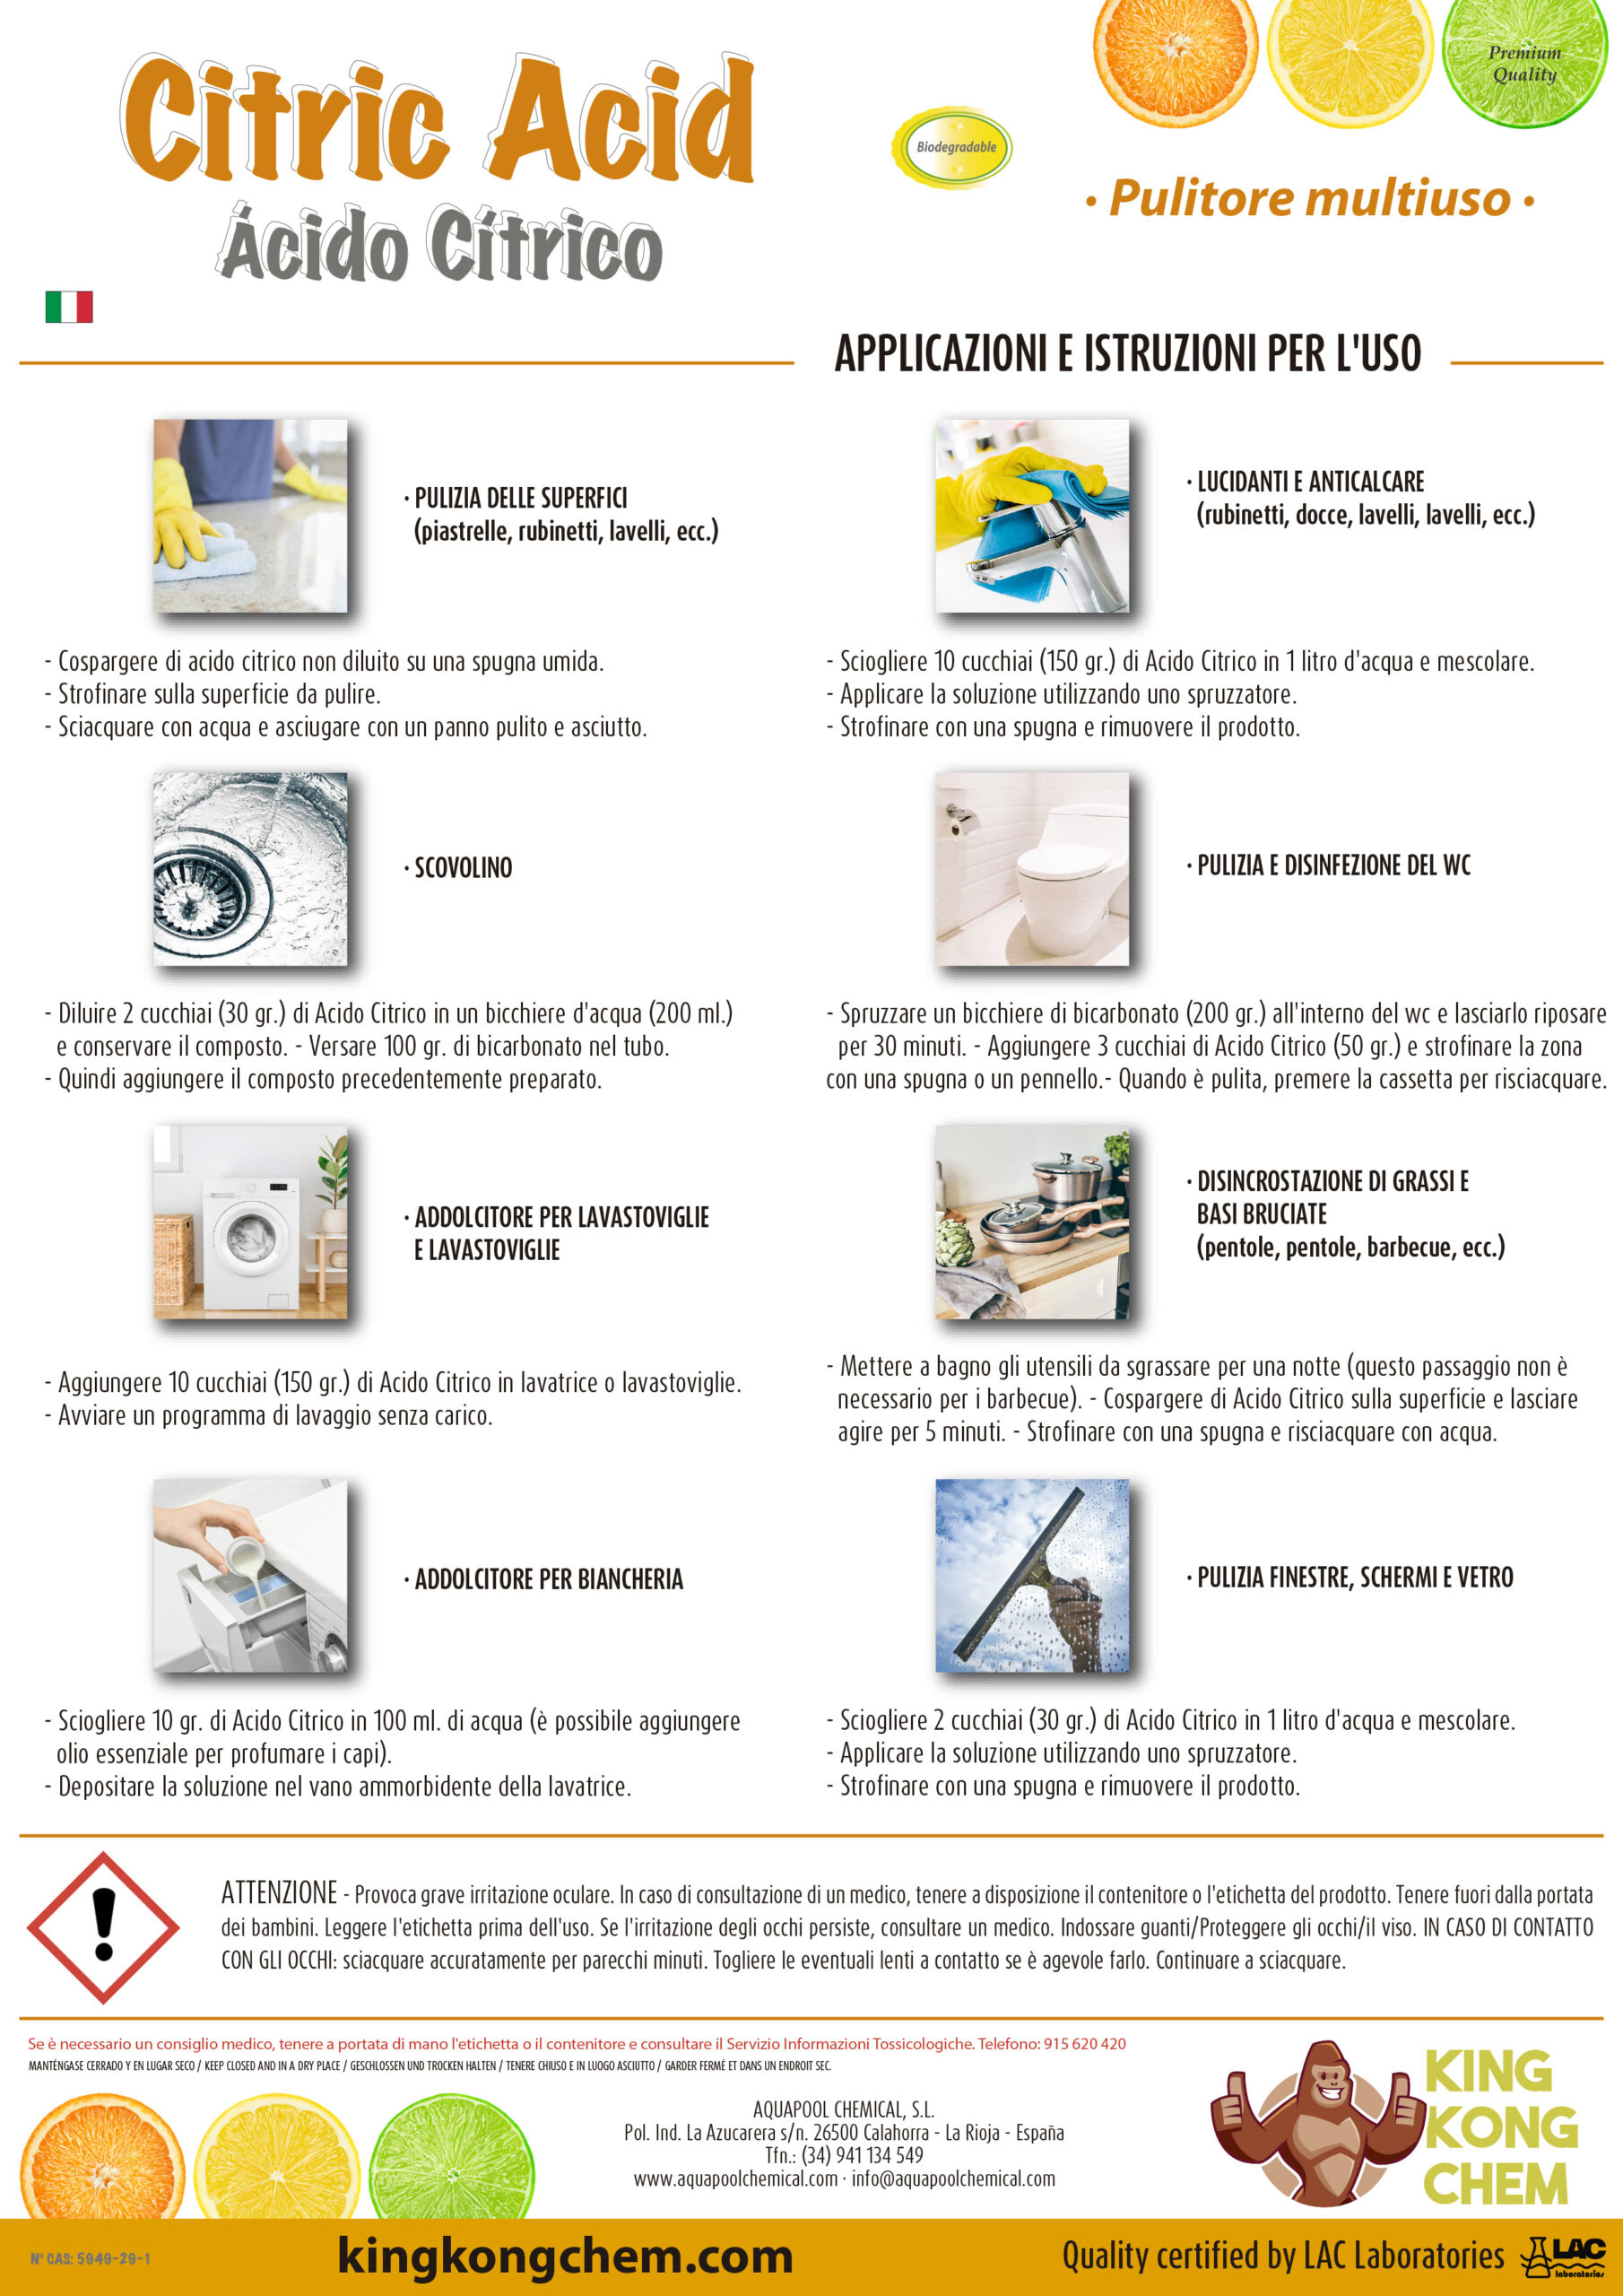 10 usos del ácido cítrico en la limpieza del hogar